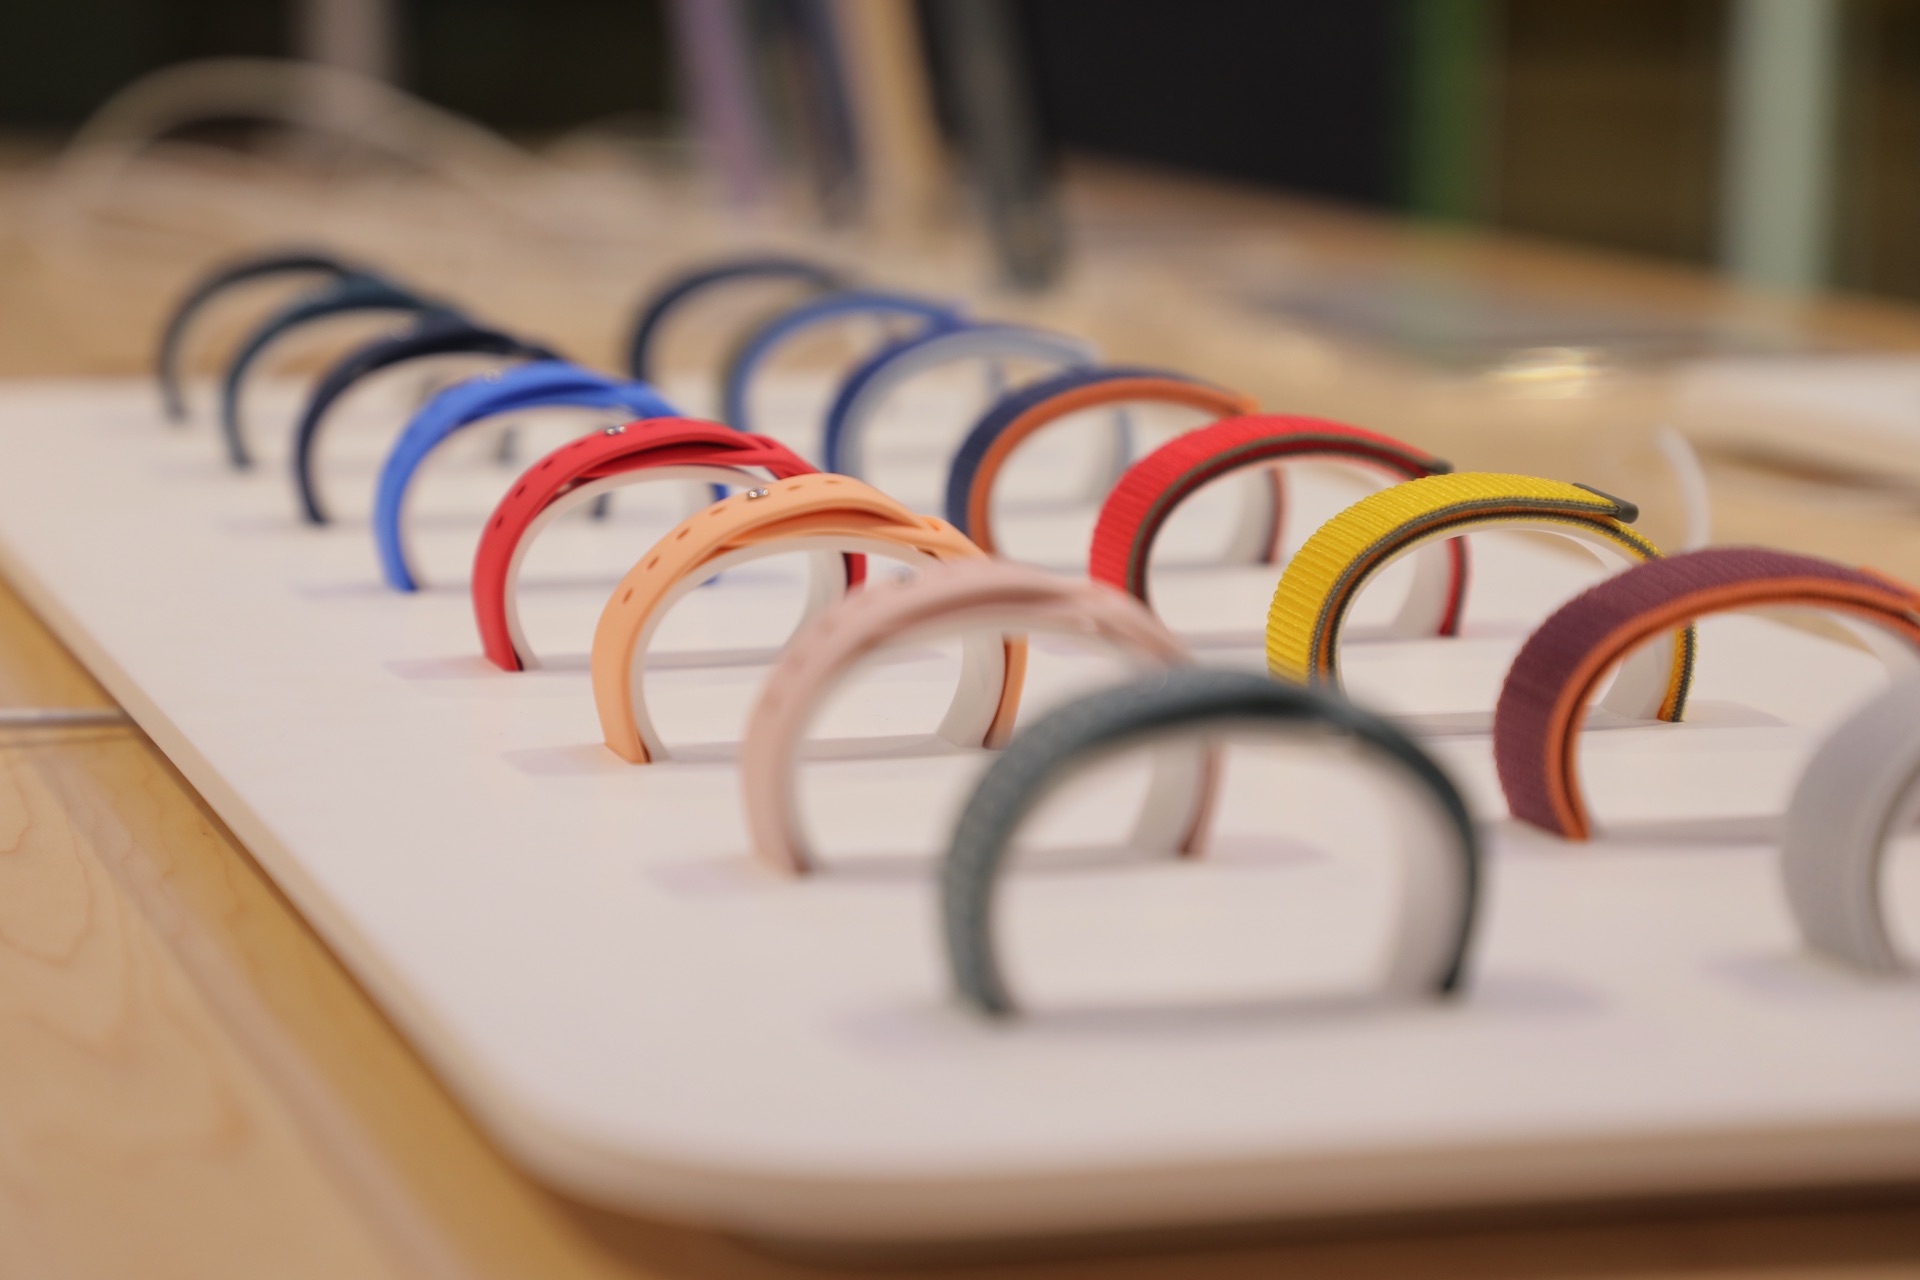 Сменные браслеты для Apple iWatch